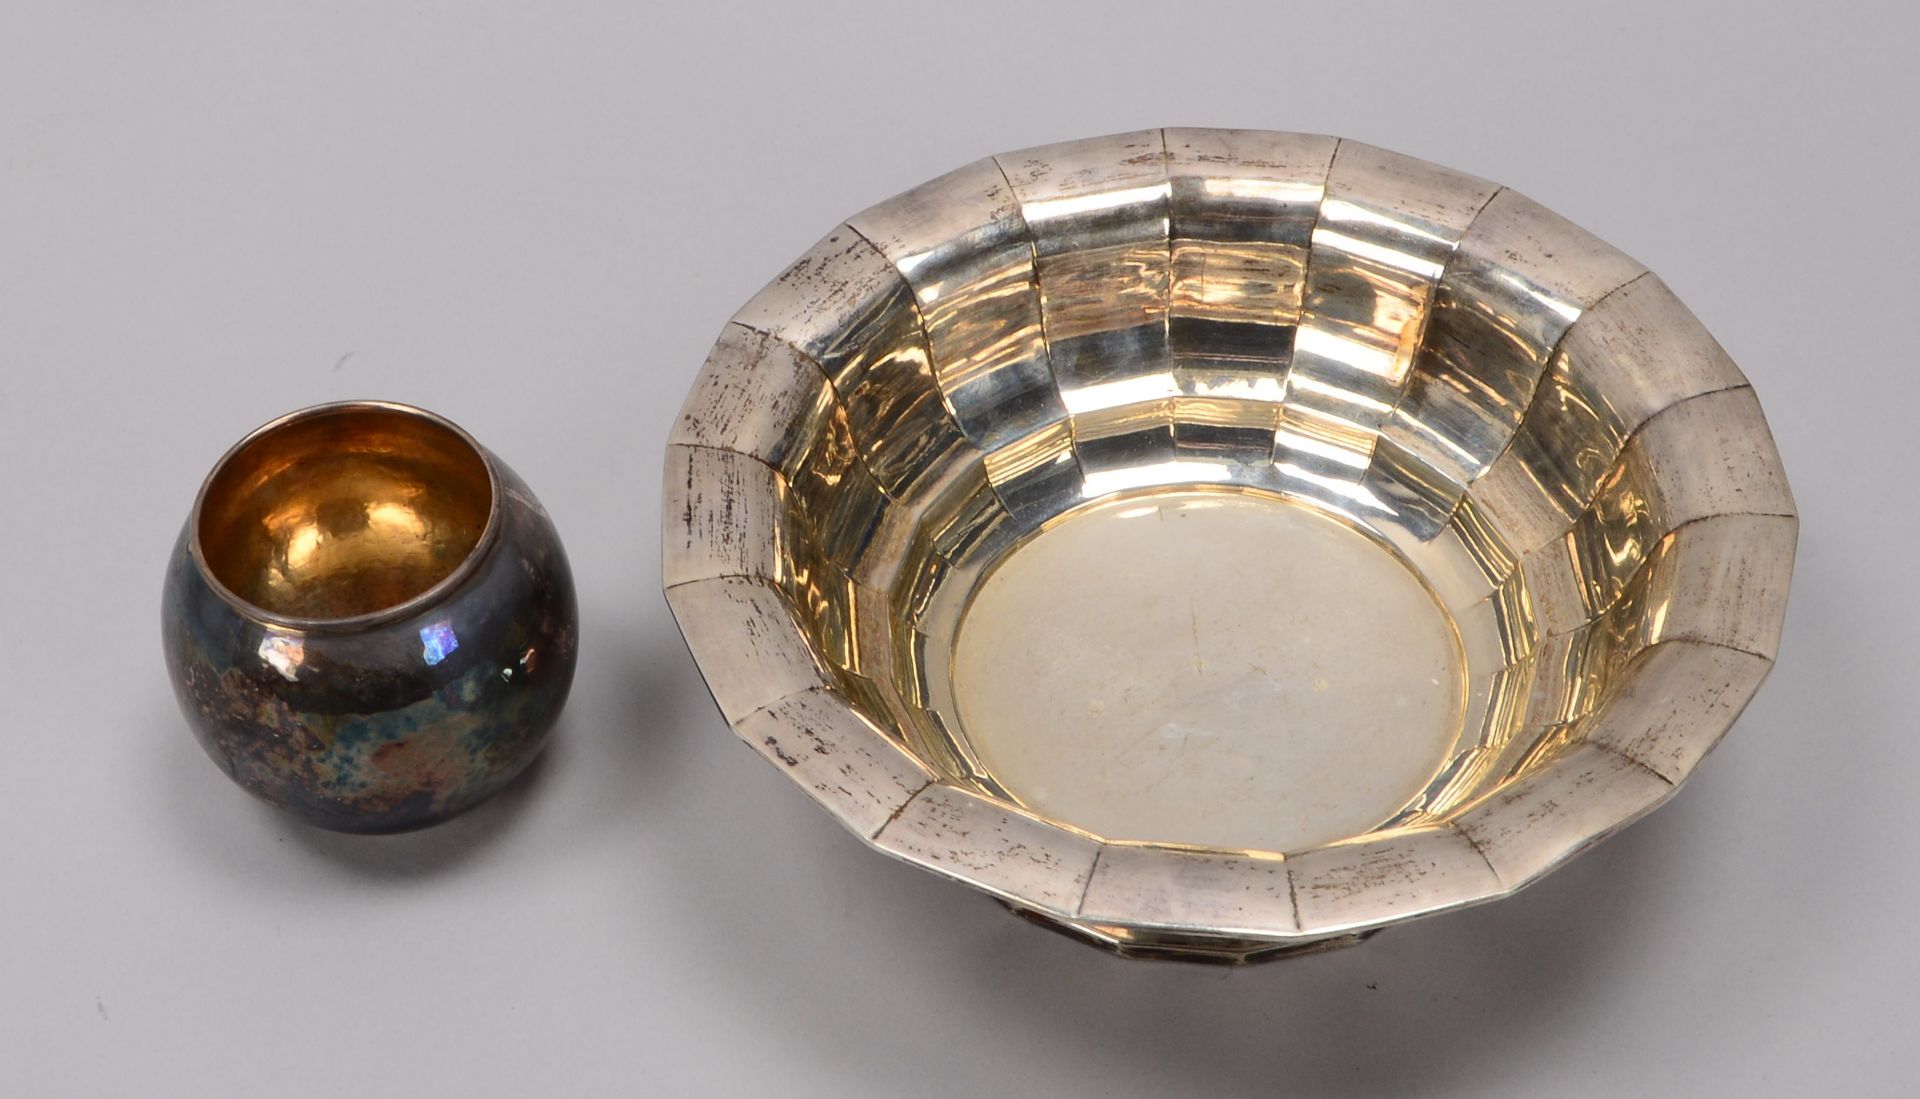 2 Silbergef&auml;&szlig;e, kleine Vase und Schale, Schale mit gestufter passiger Wandung; Gesamtgewi